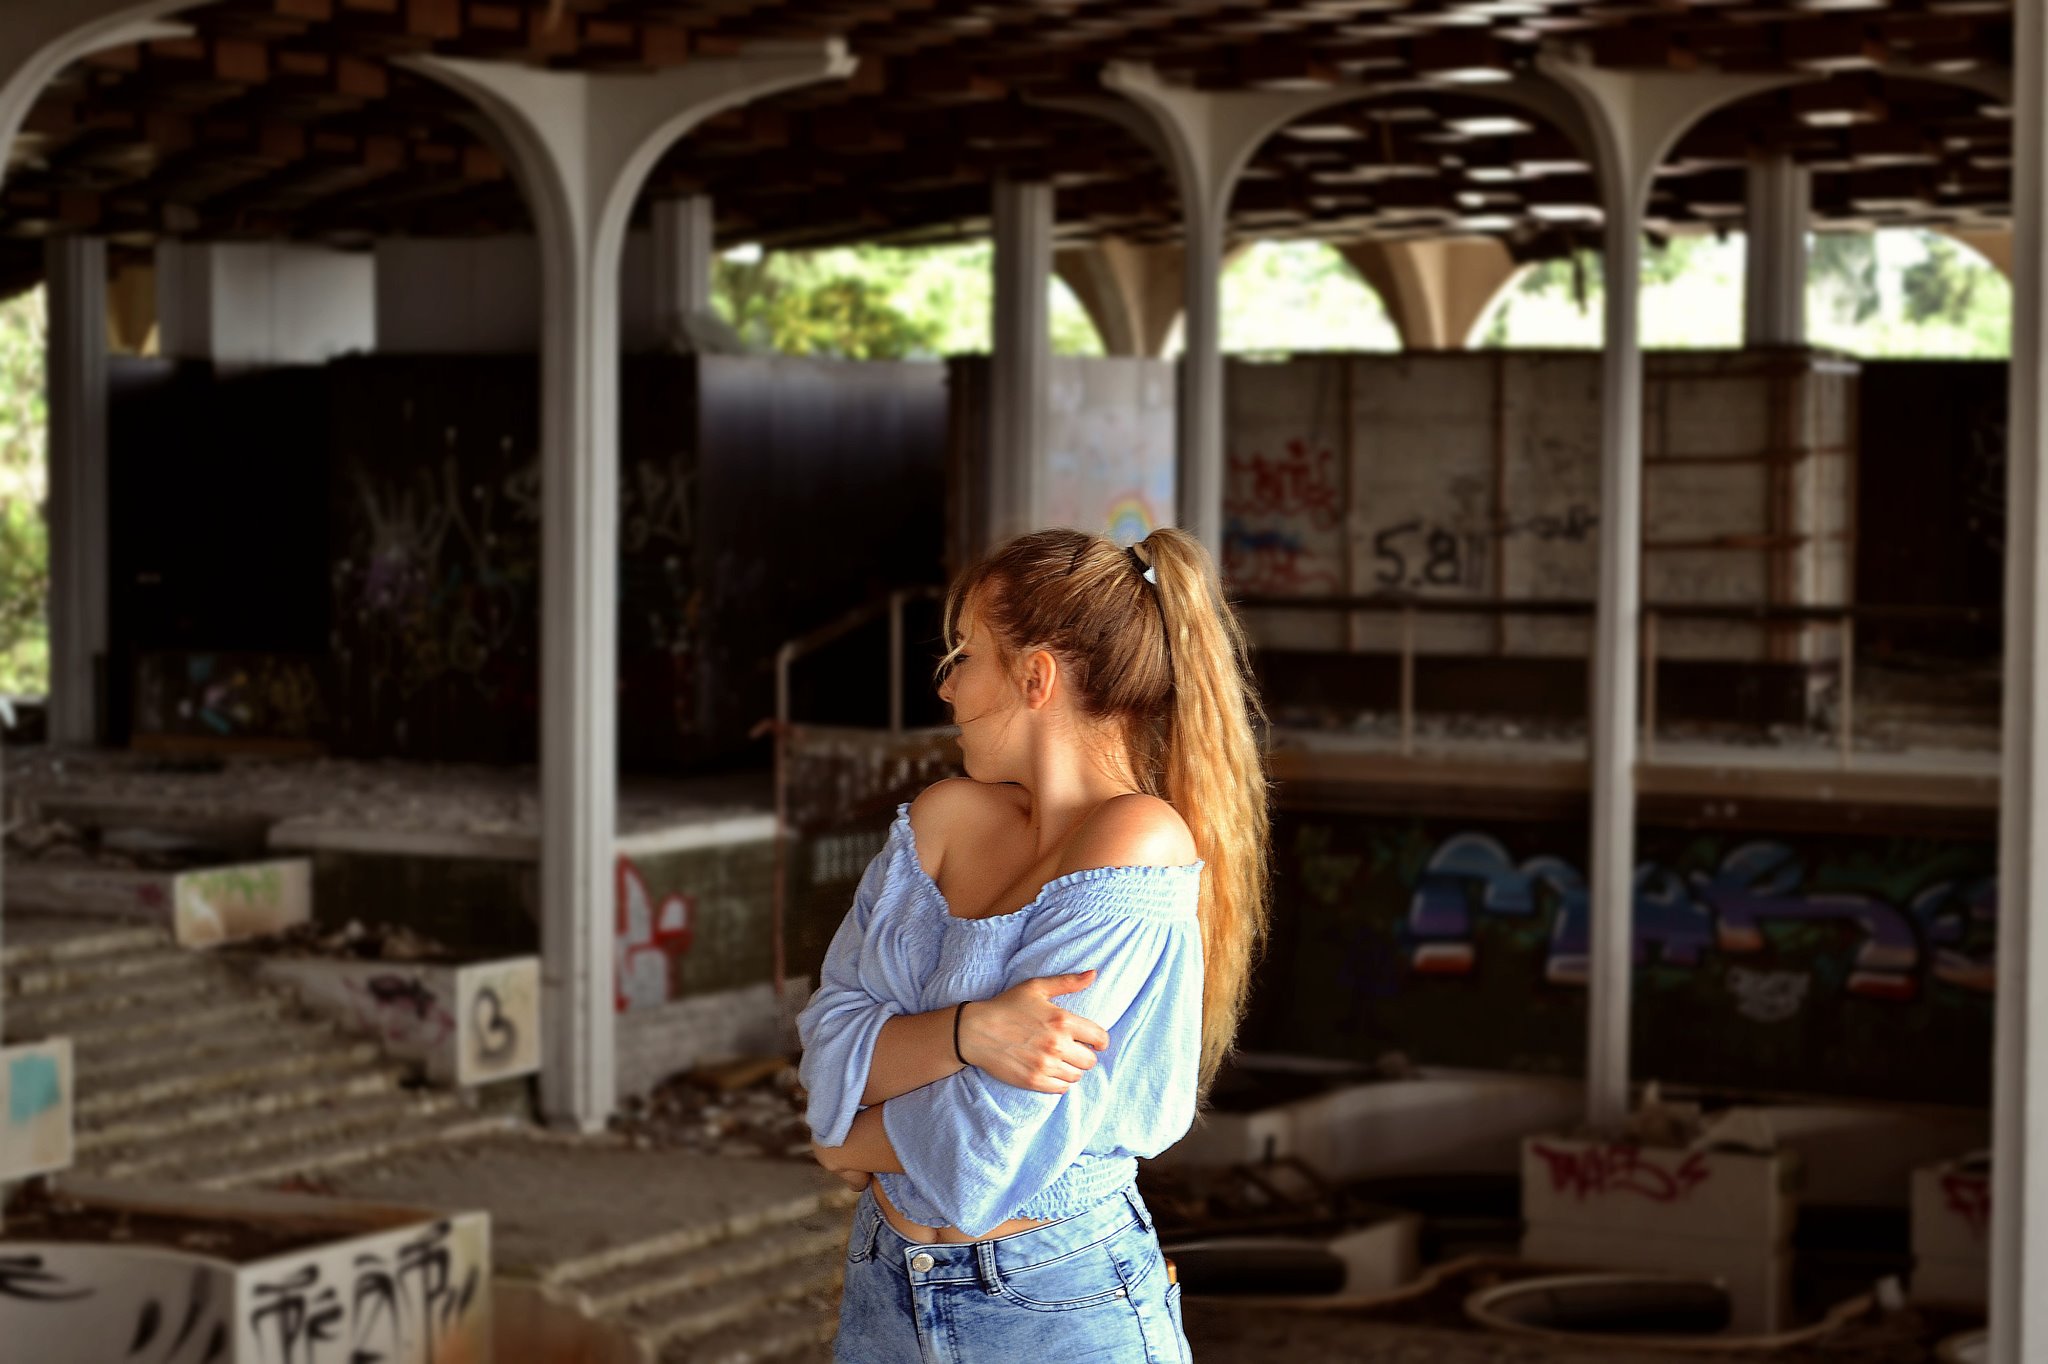 DNEVNA: Mlada pustolovka z nadvse nenavadno ljubeznijo do zapuščenih zgradb